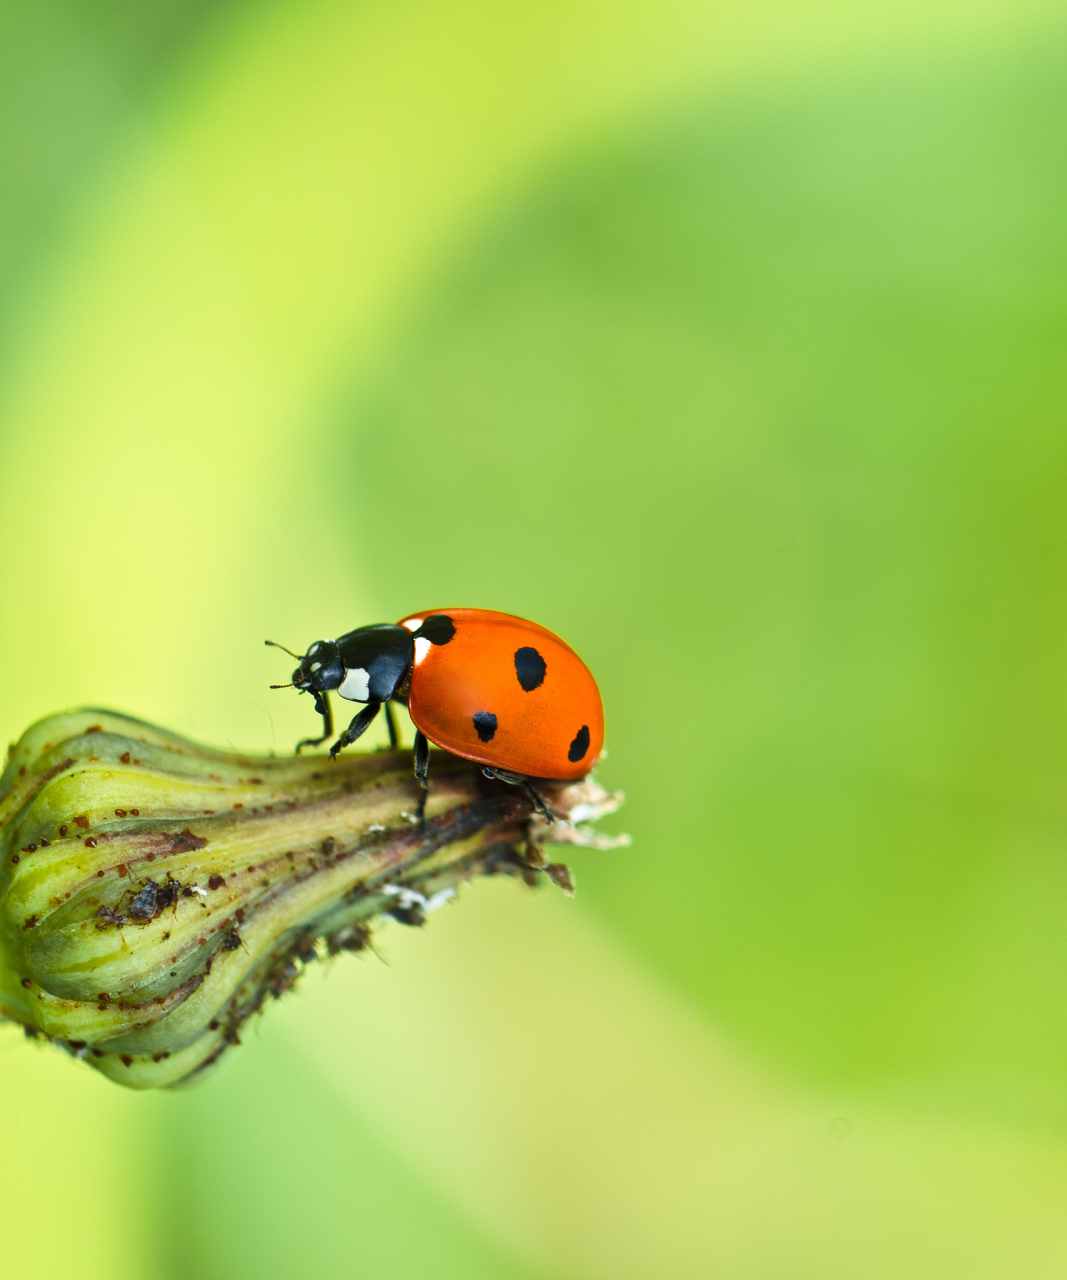 瓢虫在一些植物上寄生,吃掉叶绿素,对植物造成伤害